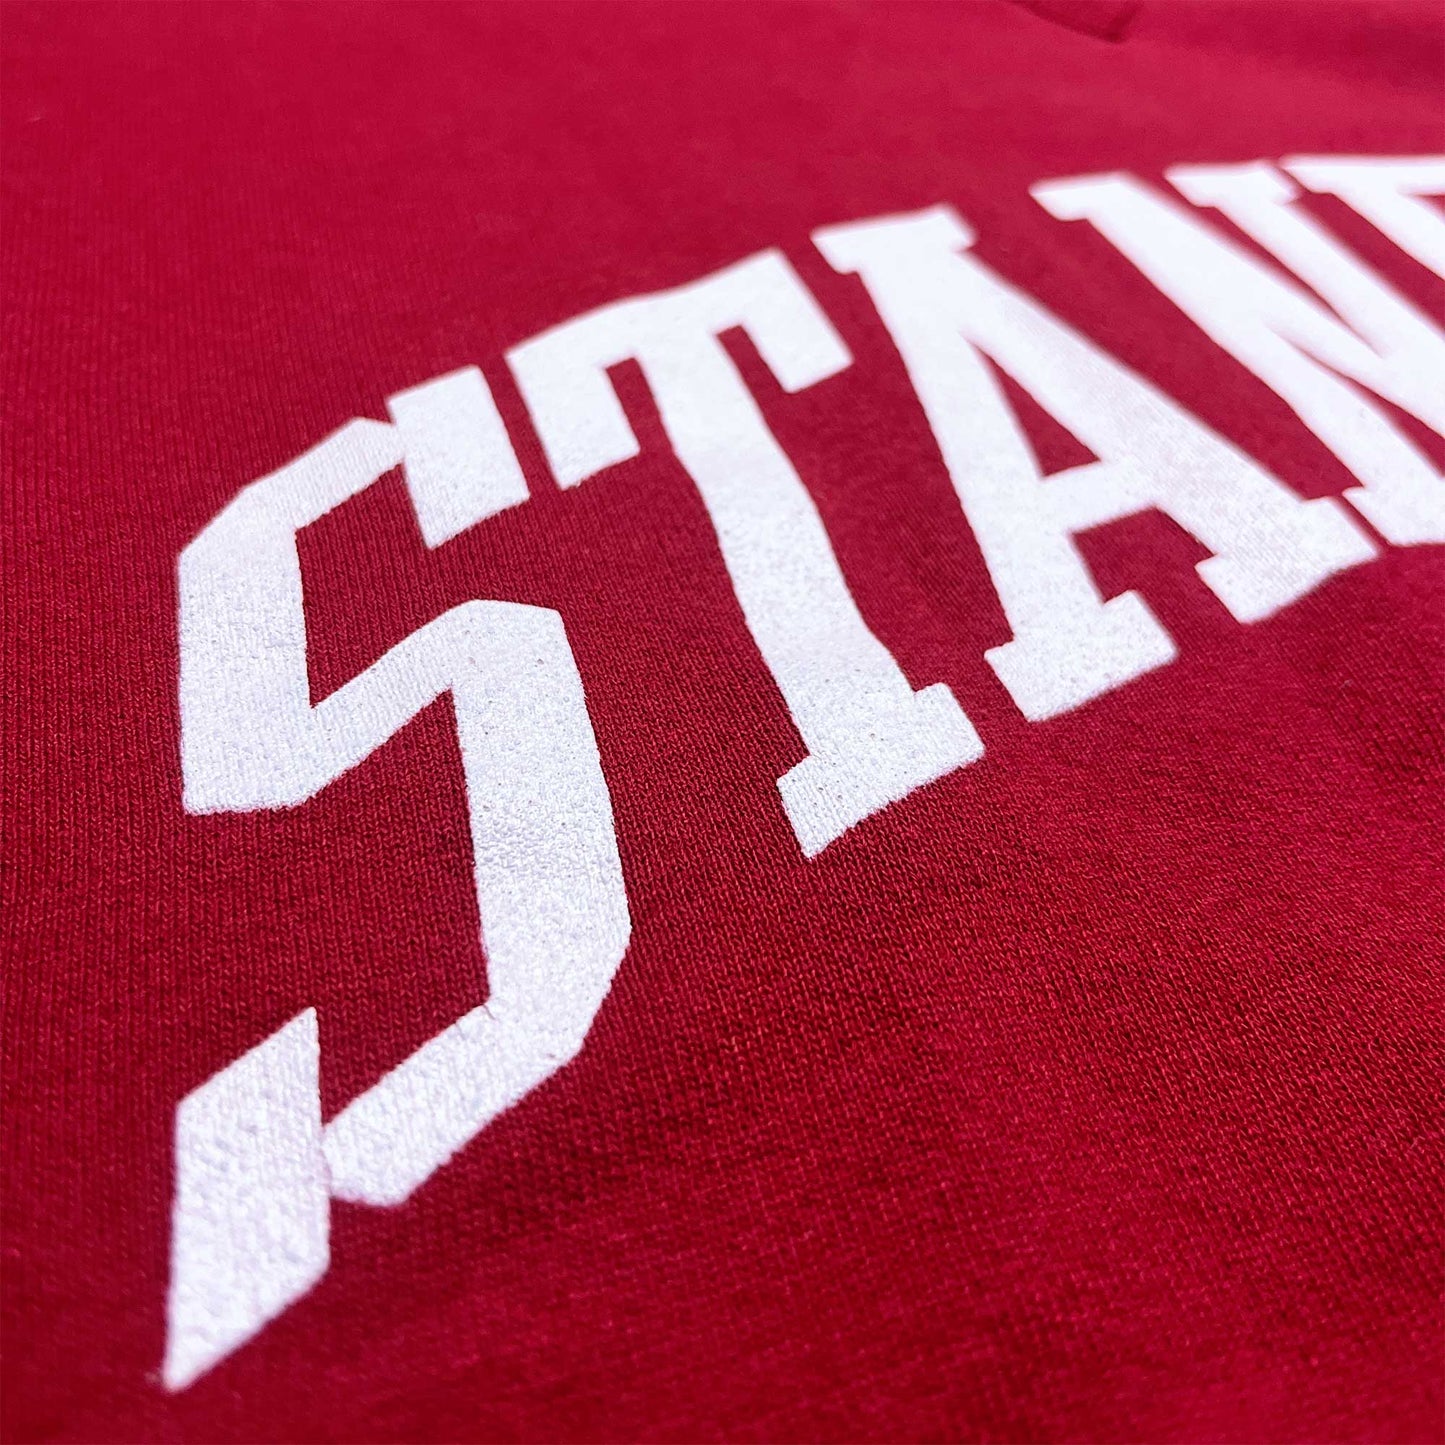 Stanford Cardinal - Größe M - Russell Athletic NCAA Sweatshirt